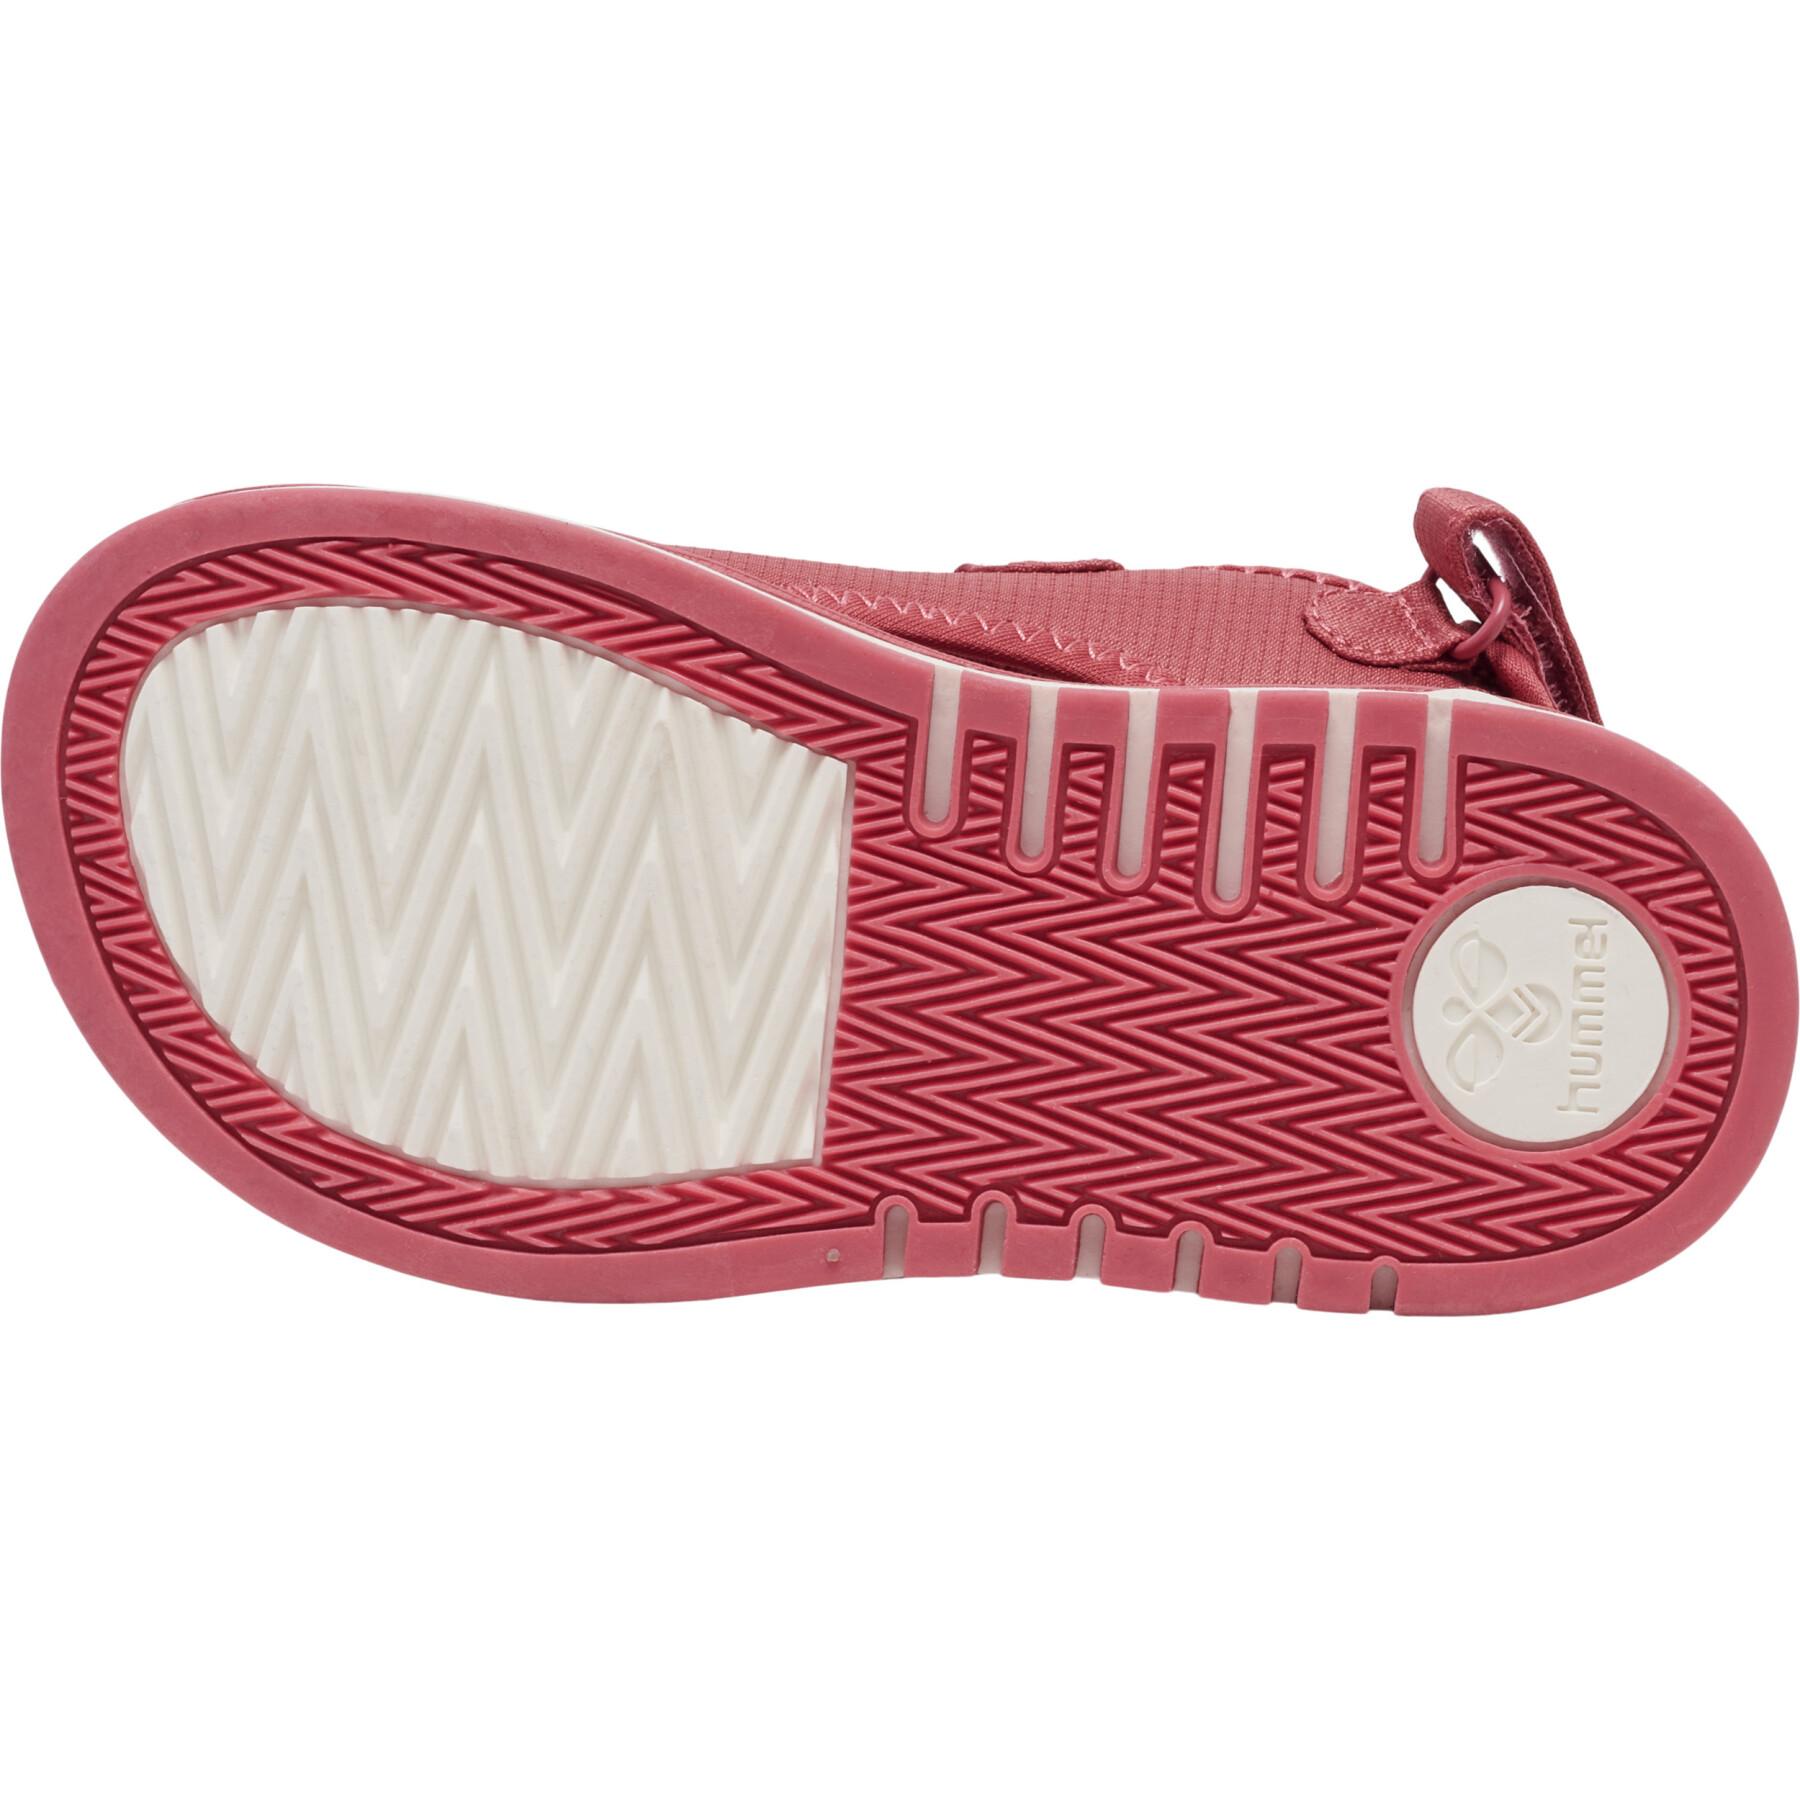 Children's sandals Hummel Zori